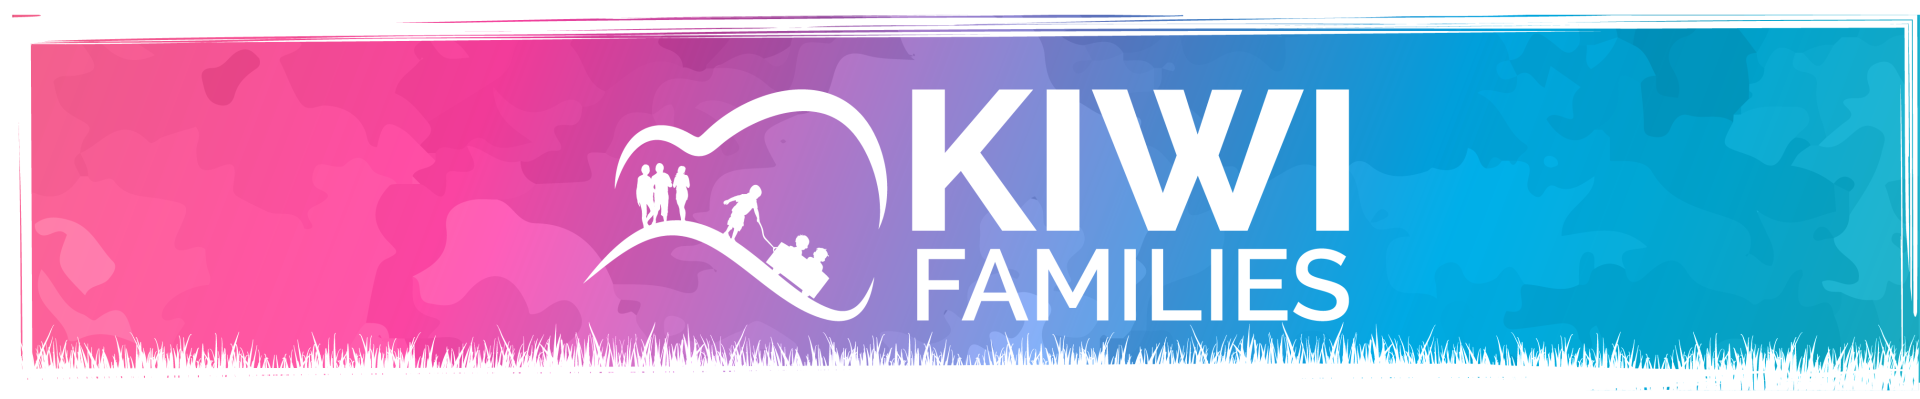 Kiwi Families